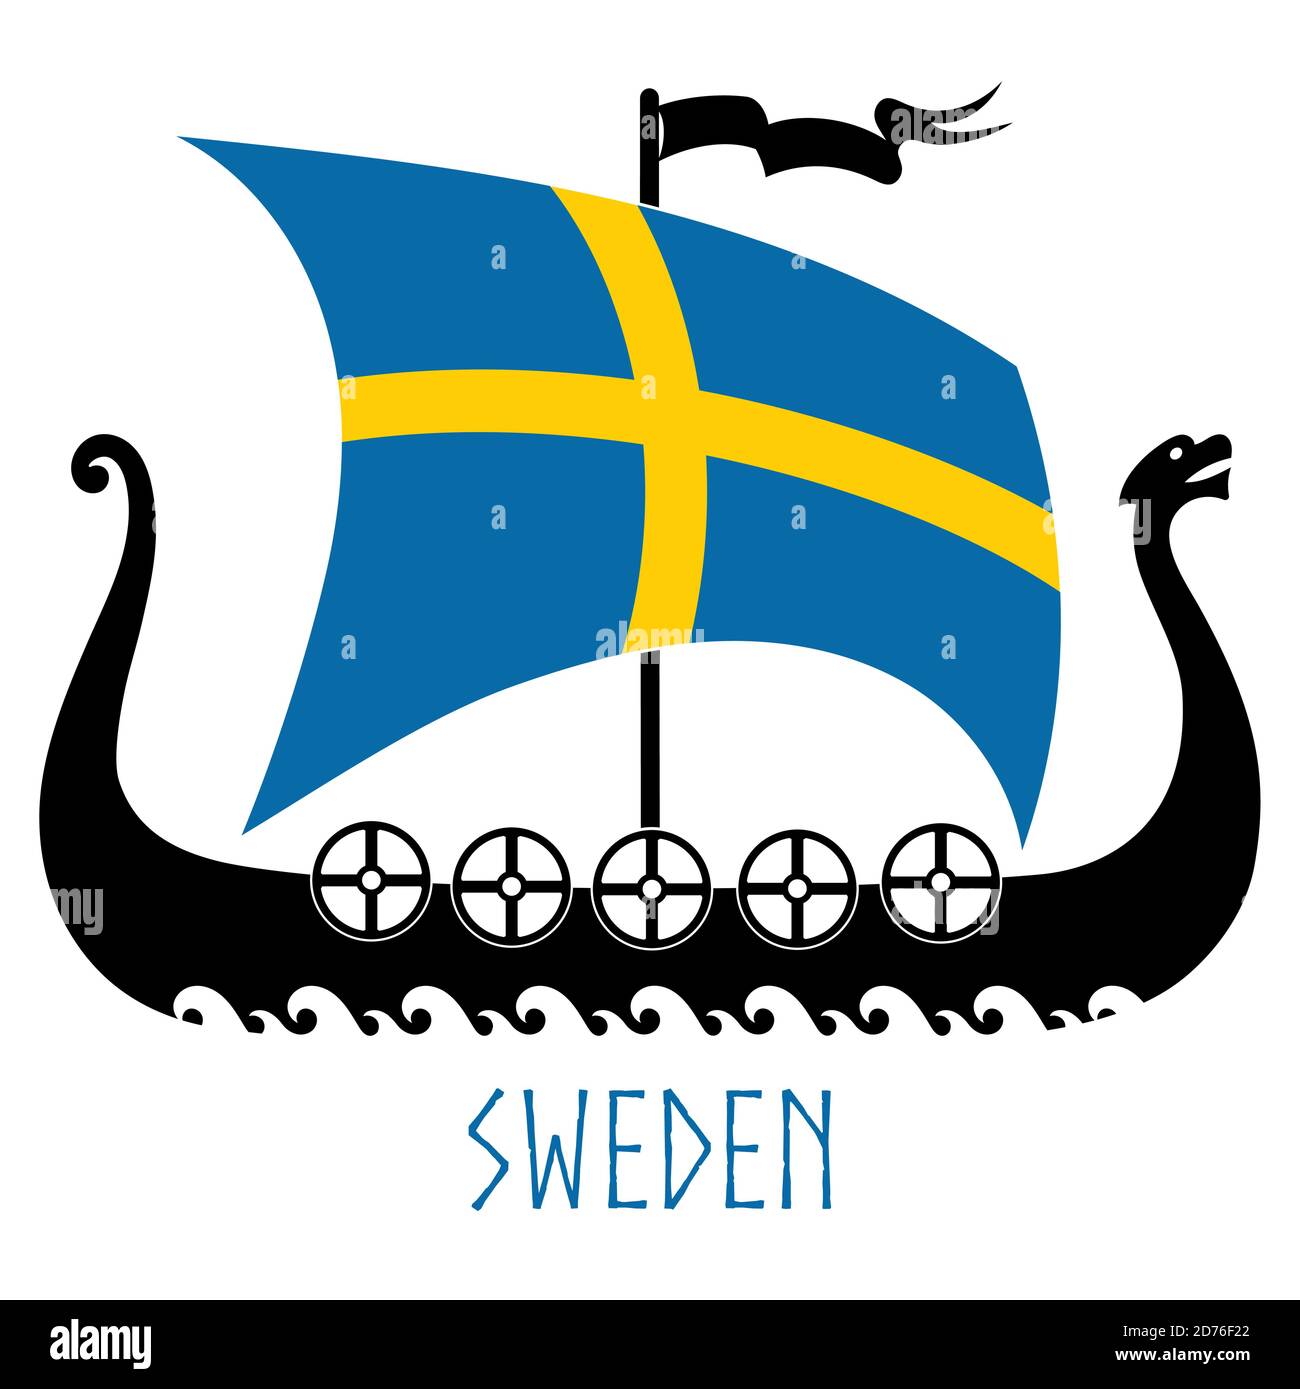 Kriegsschiff der Wikinger - Drakkar und Schweden Flagge Stock Vektor